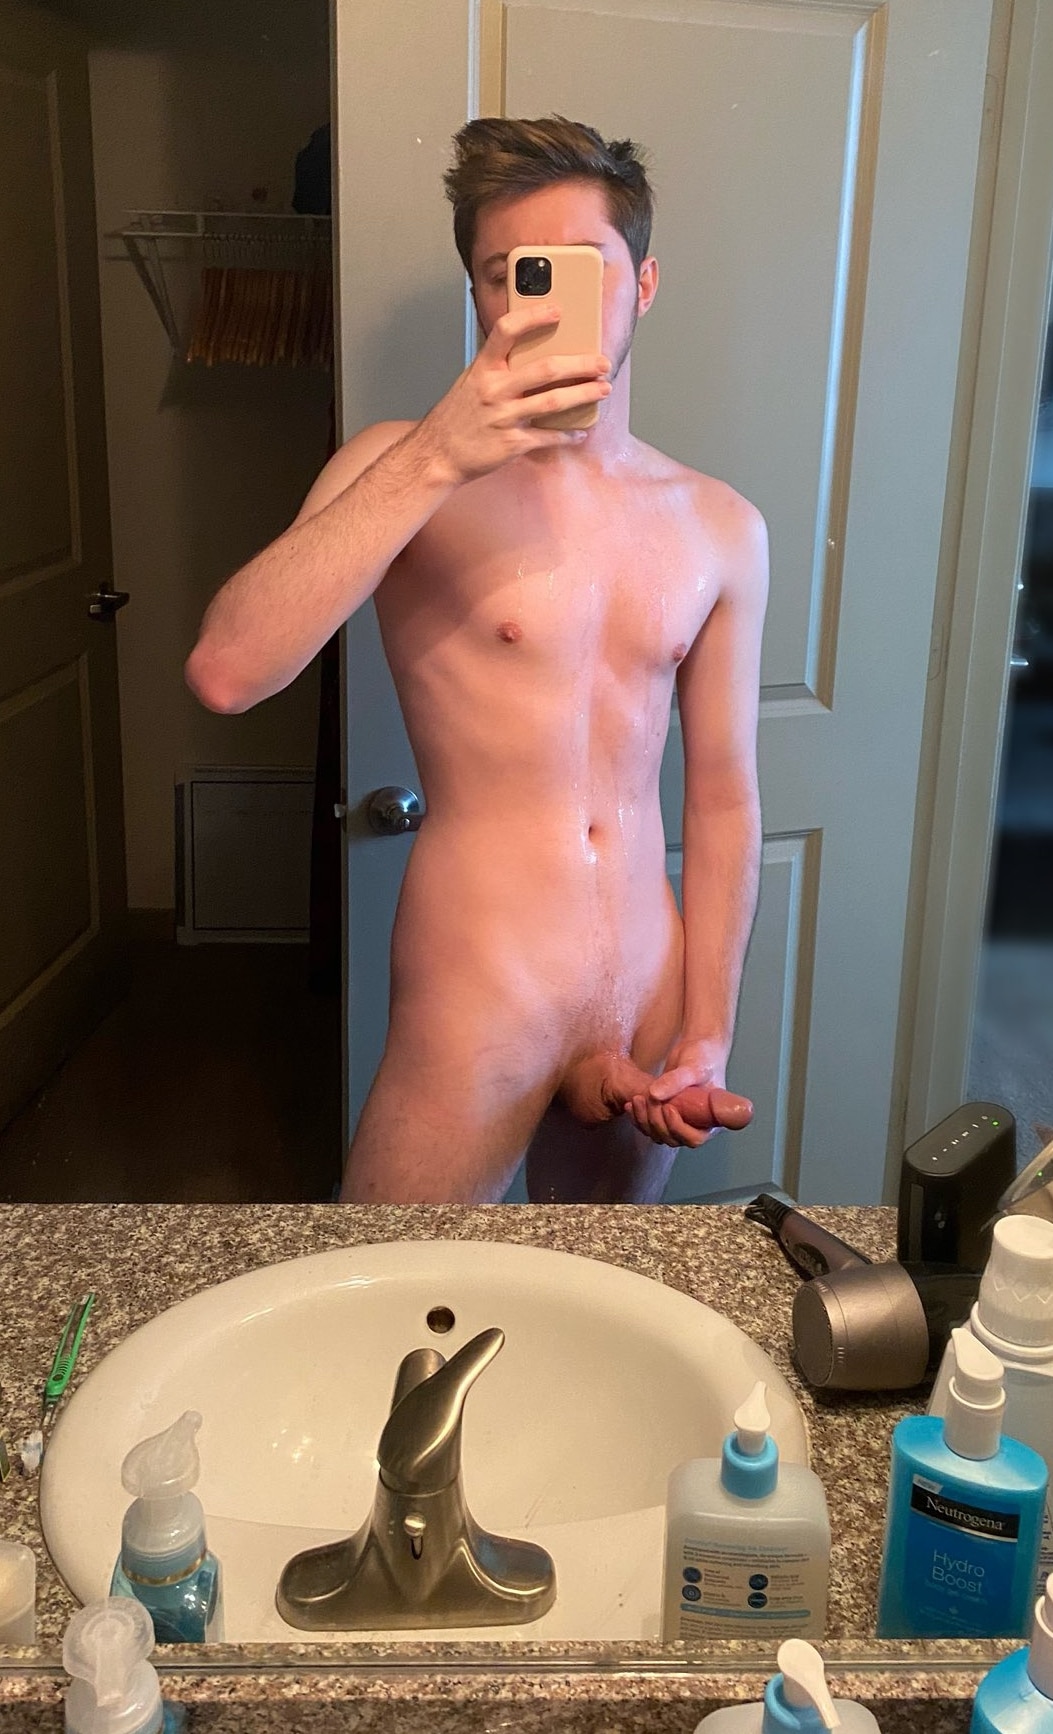 Nude guy jerking off